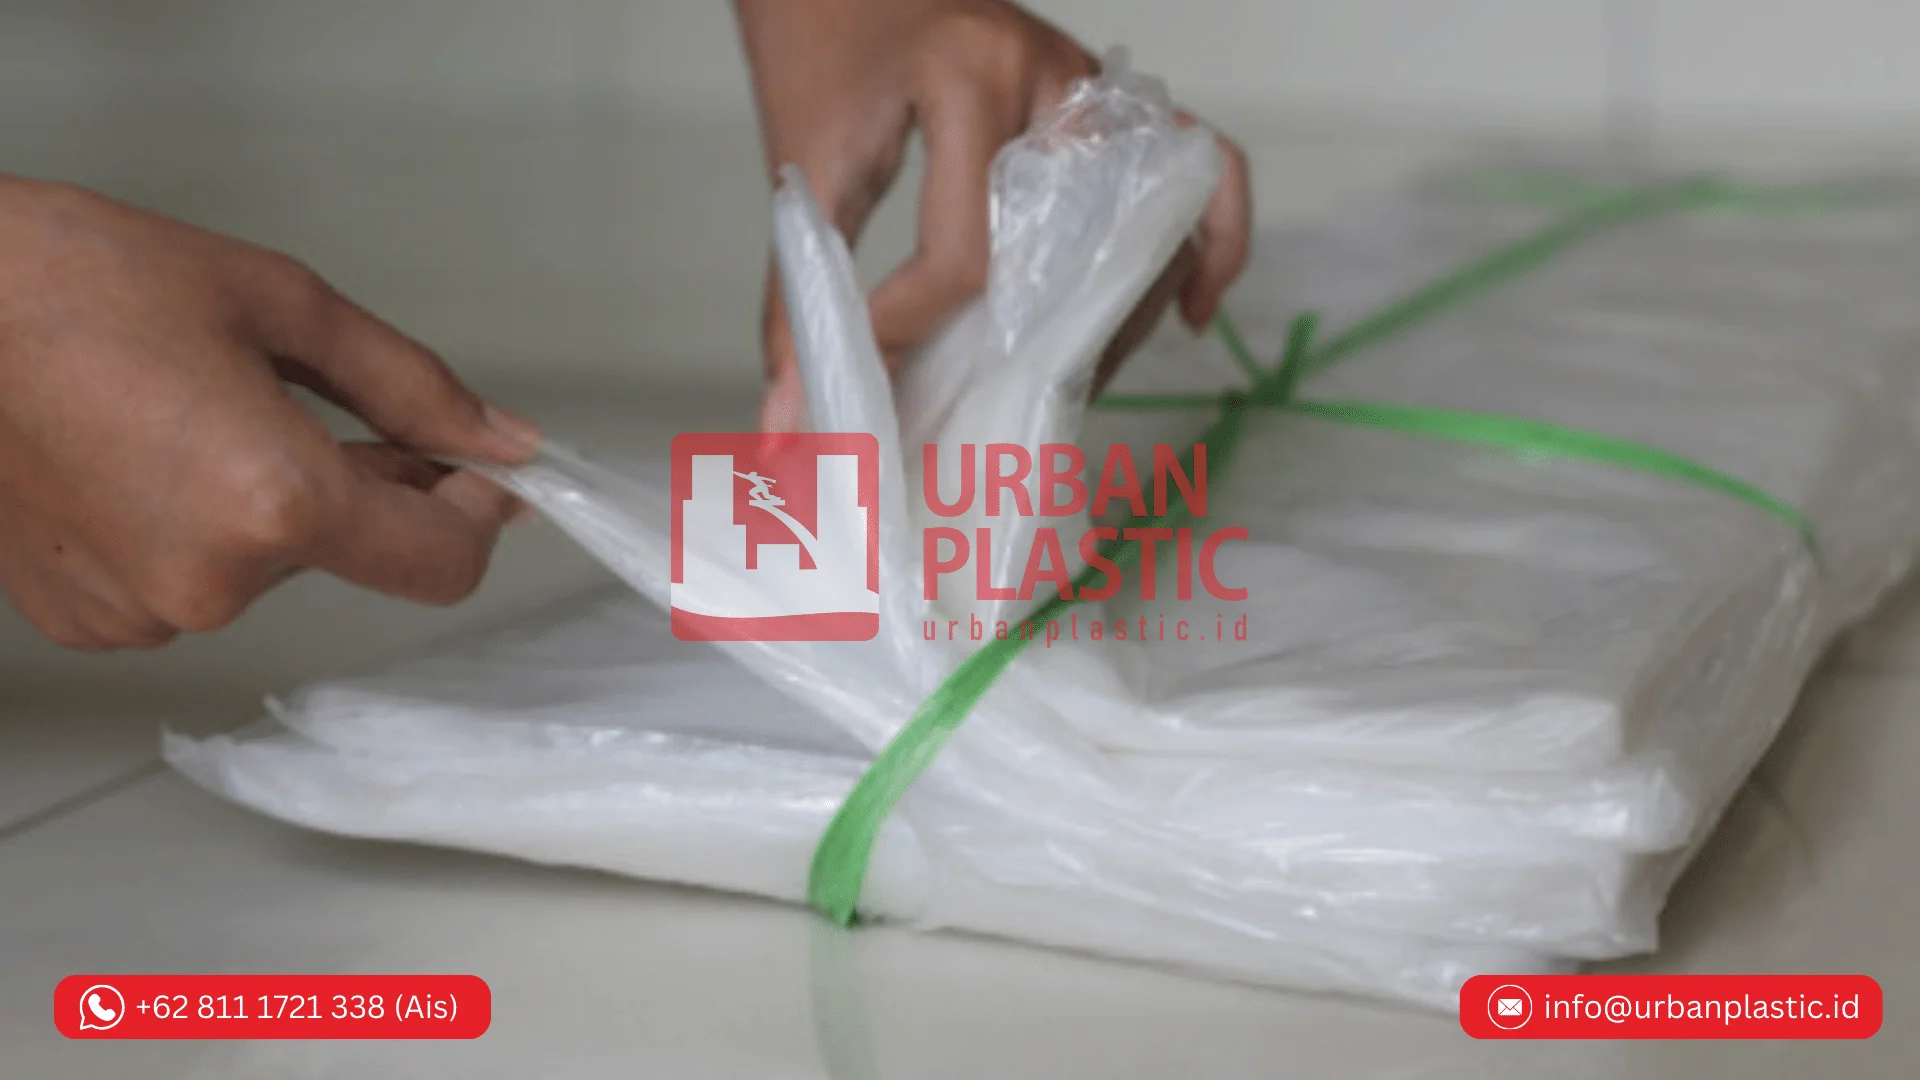 Jual Plastik Cor merk Urban Plastic untuk Proyek<br />
Pembangunan Jalan di Kabupaten Mimika Papua Tengah Indonesia